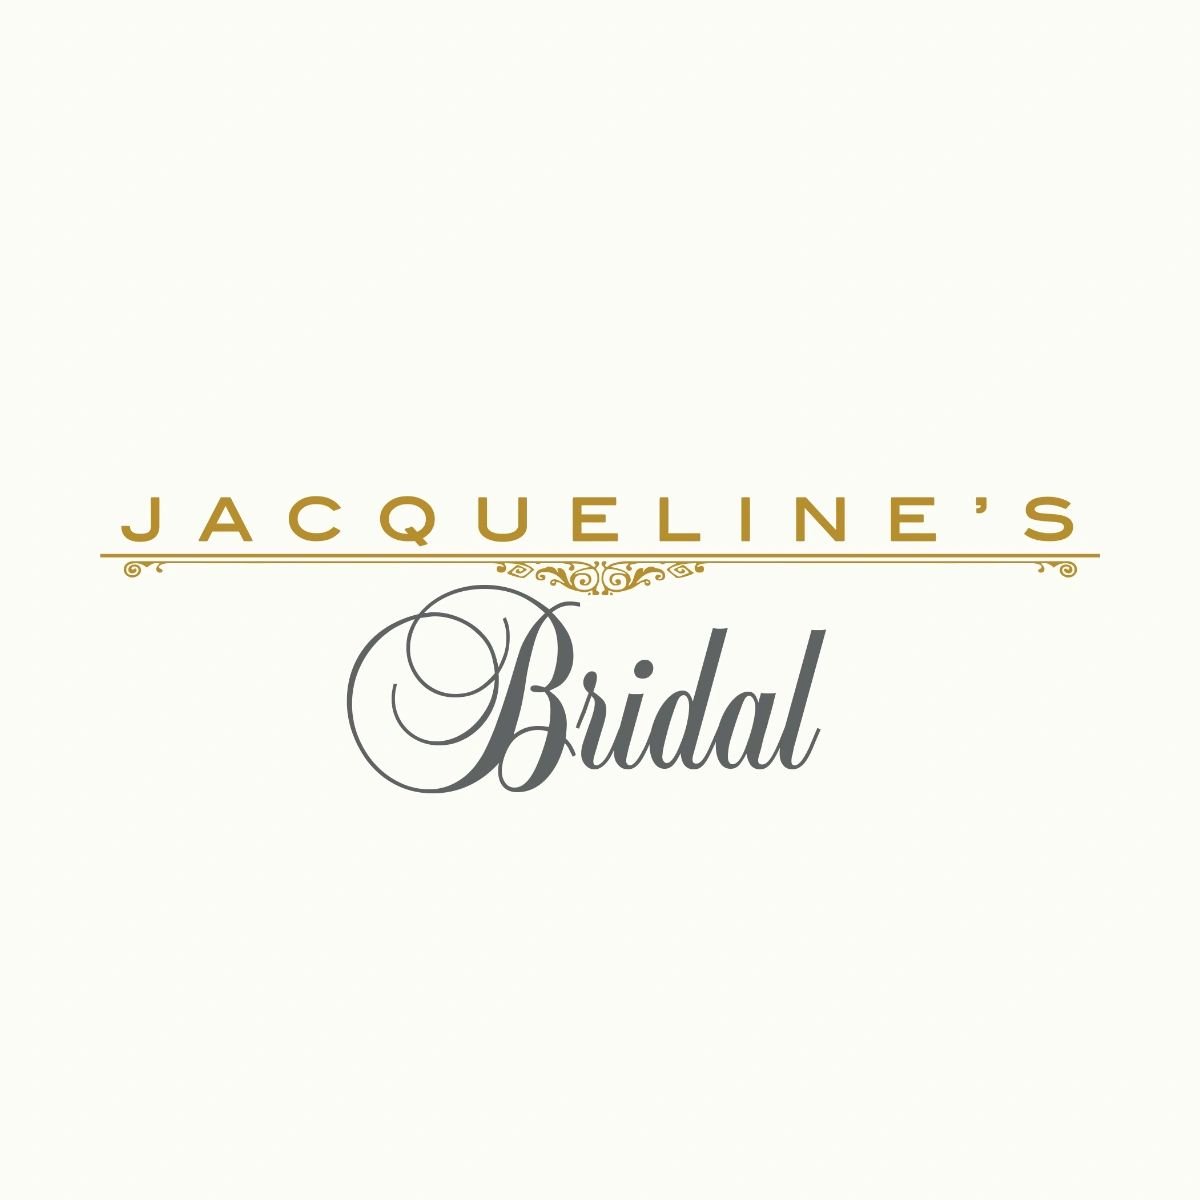 Jacqueline’s Bridal